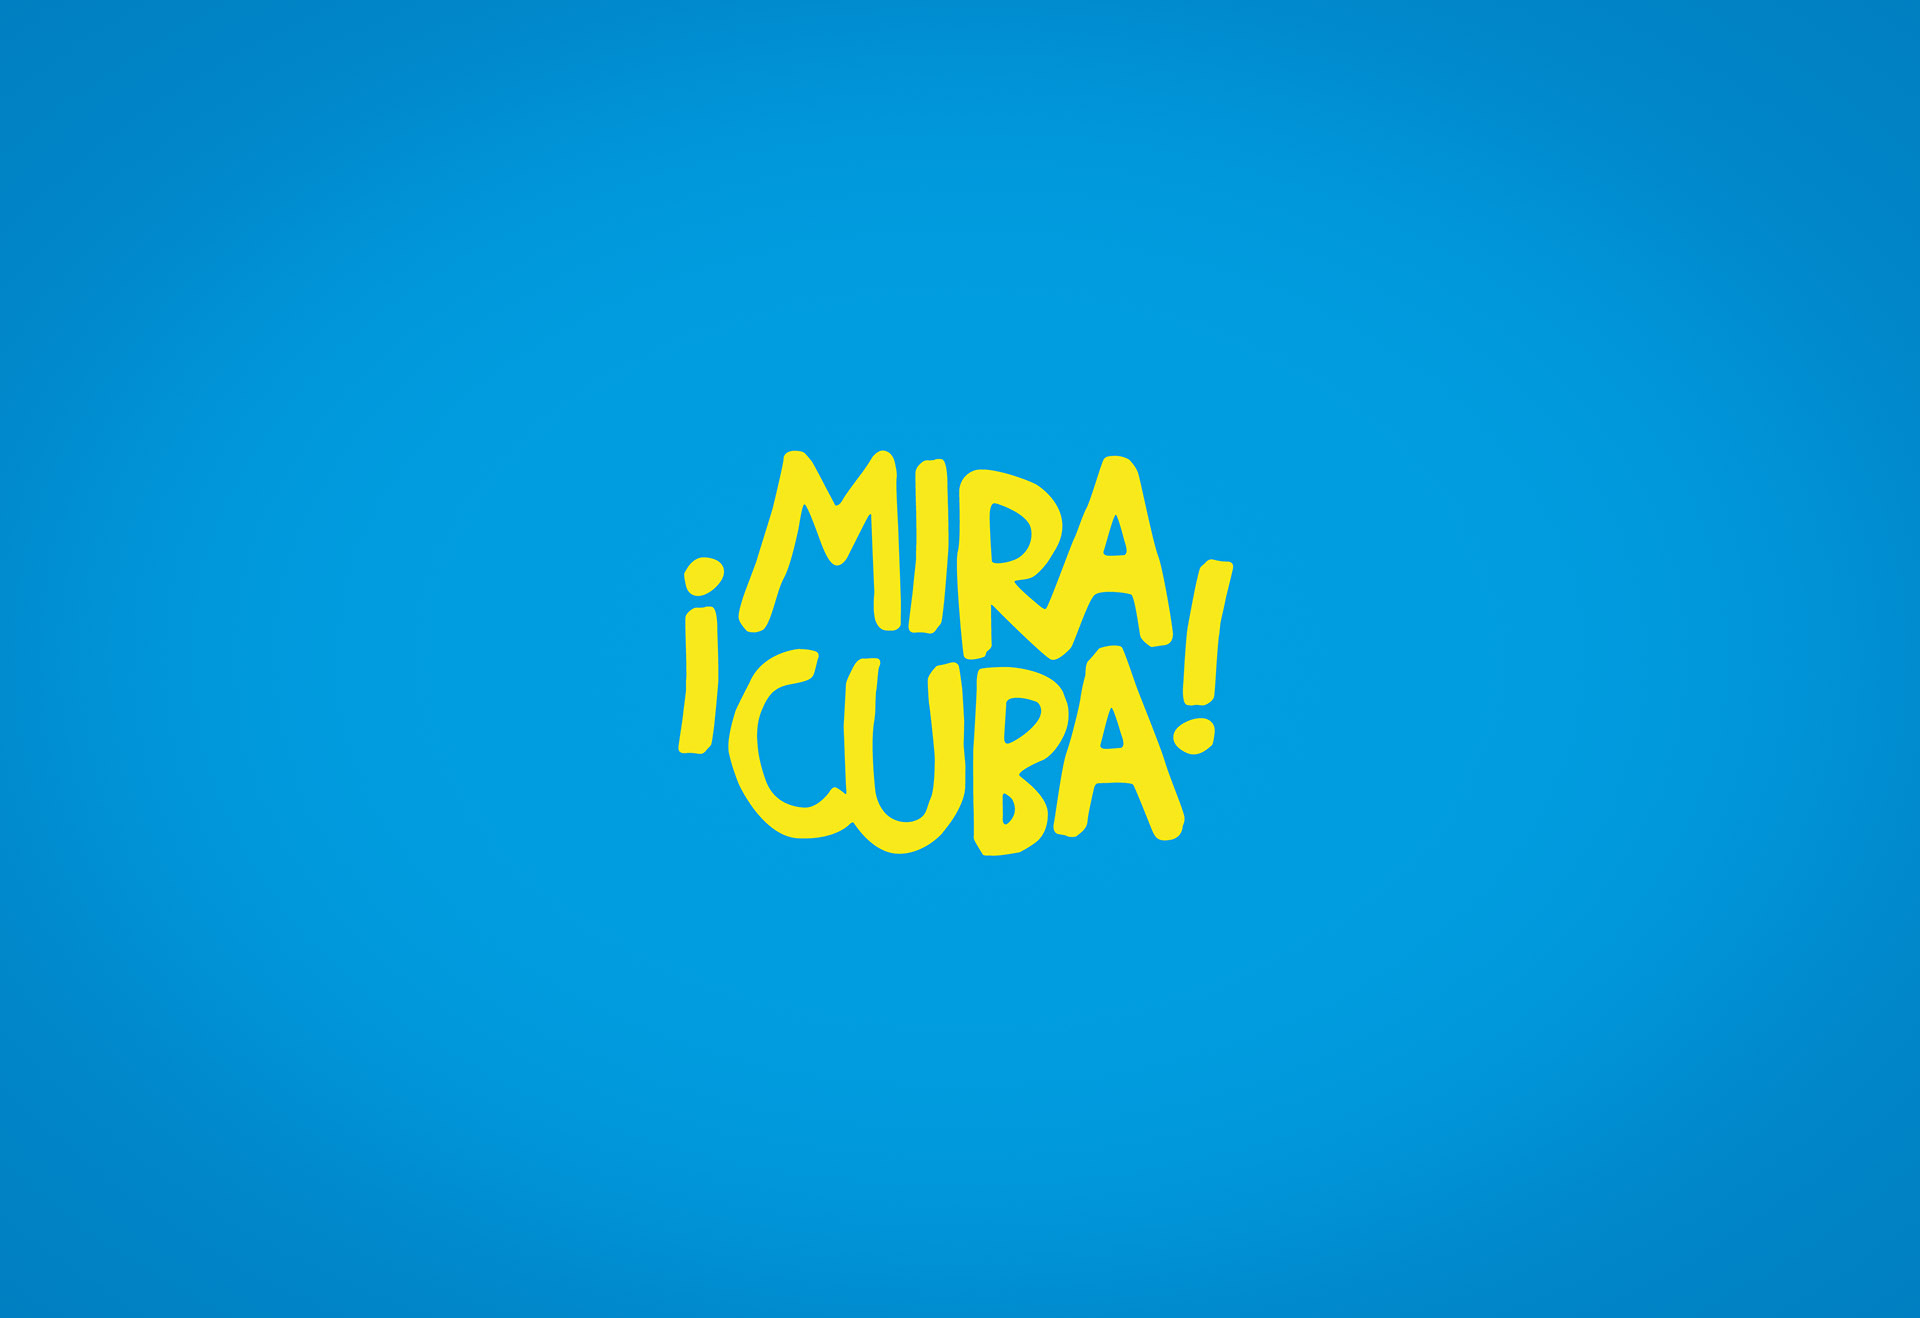 Miracuba